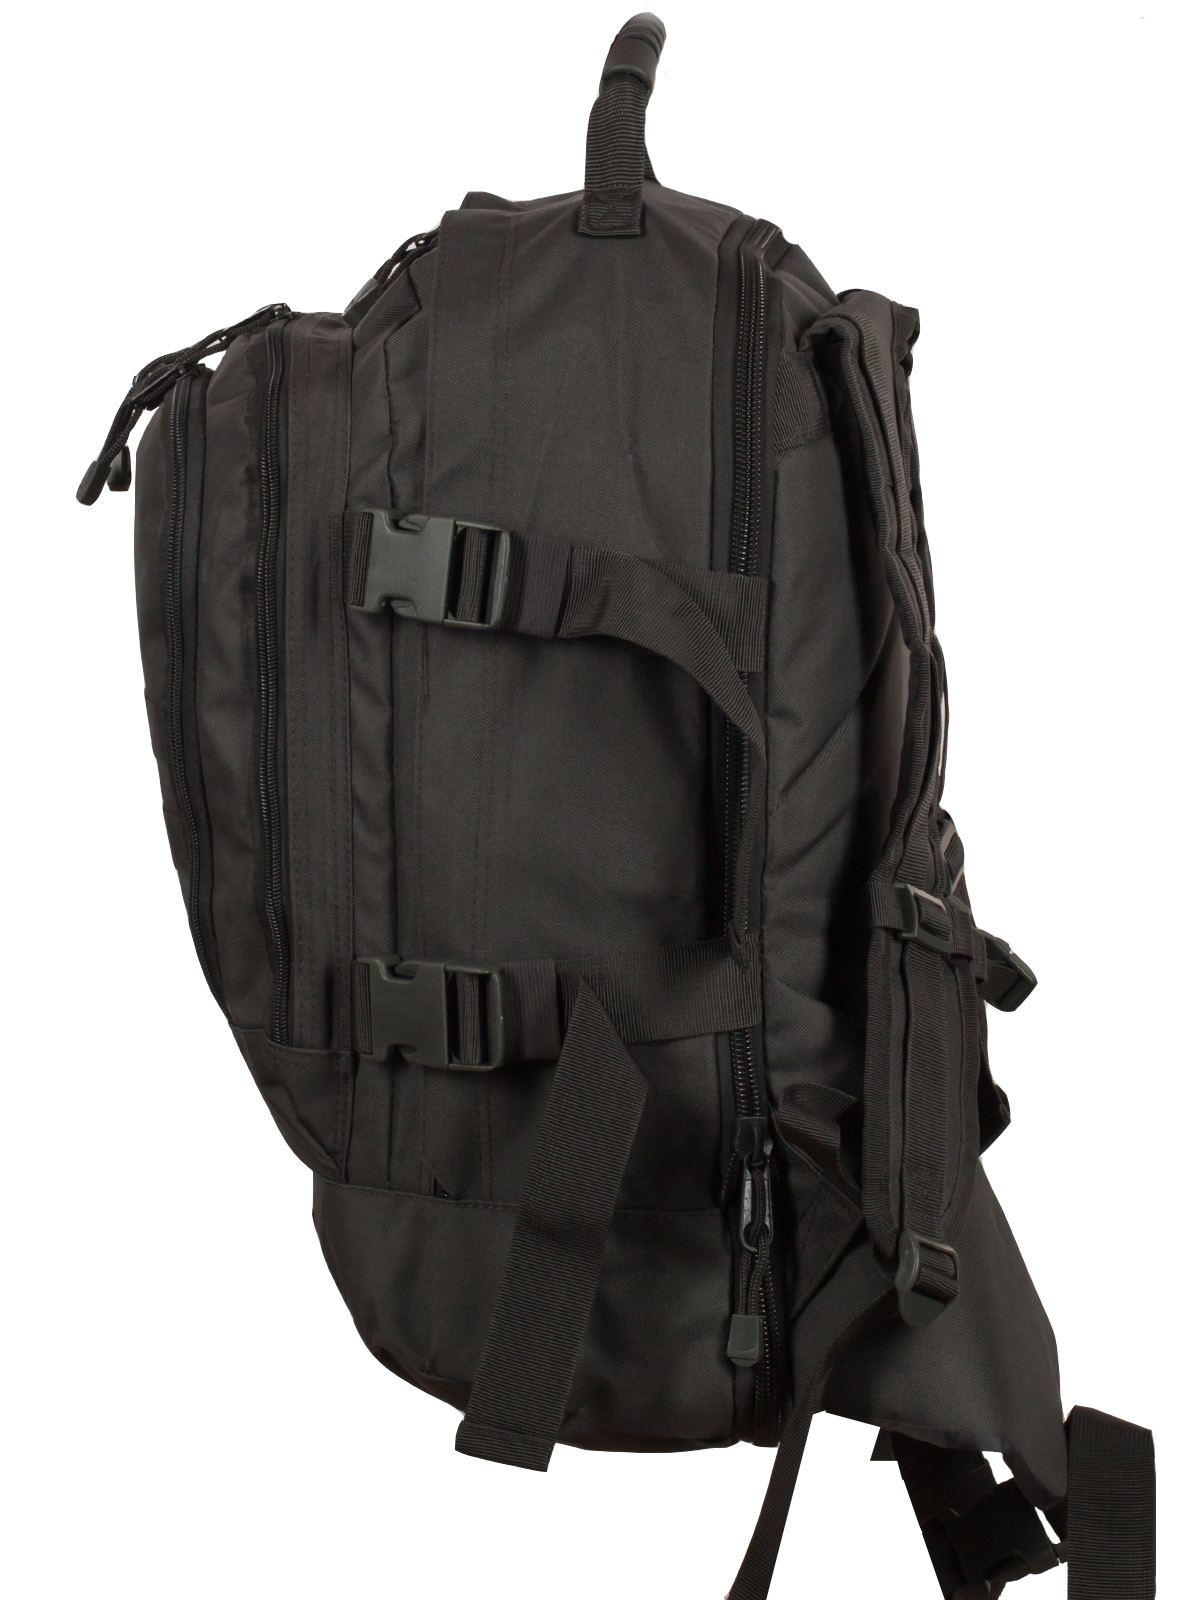 Универсальный рюкзак для города и полевых выходов 3-Day Expandable Backpack 08002A Dark Grey с эмблемой "Россия" 